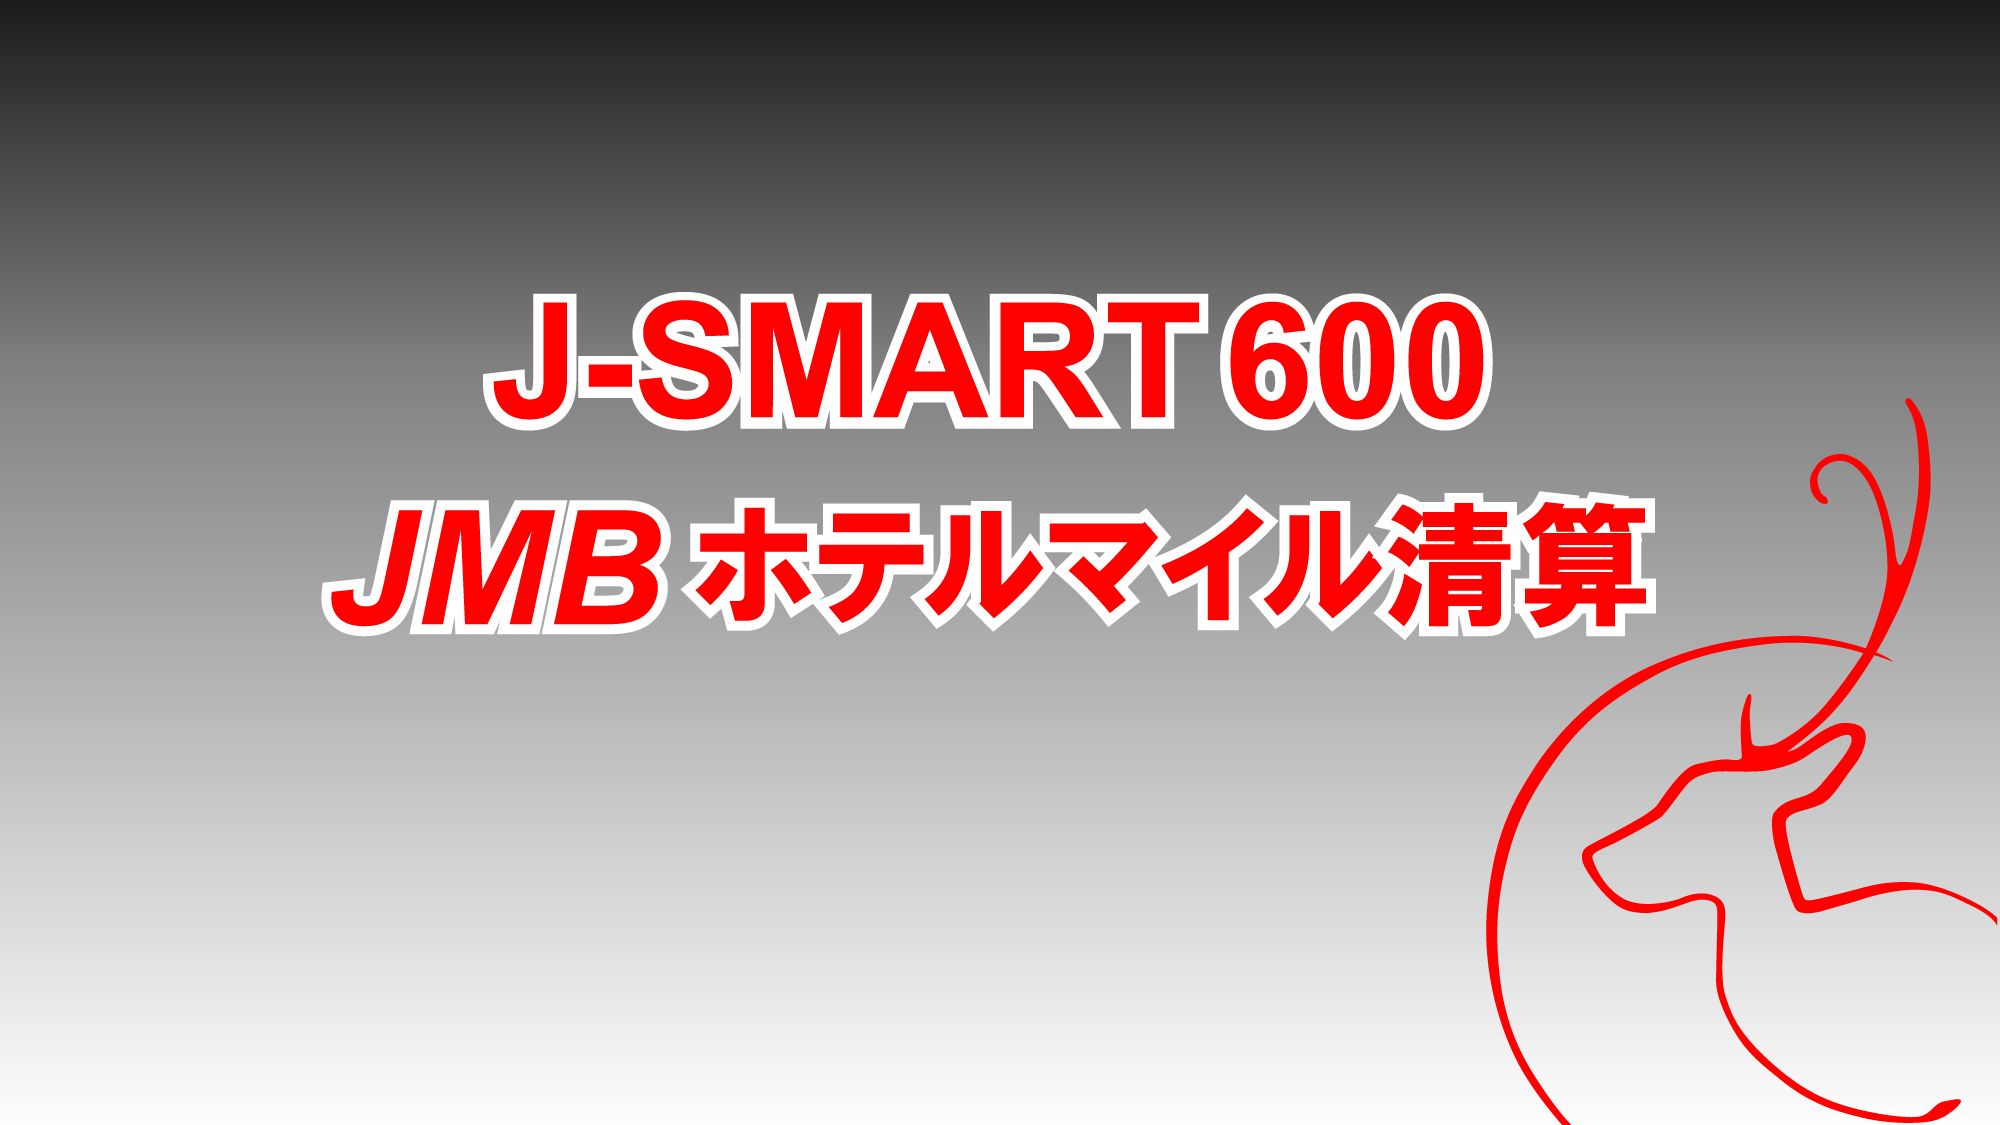 【J-SMART600】JMB600マイル付／食事なし